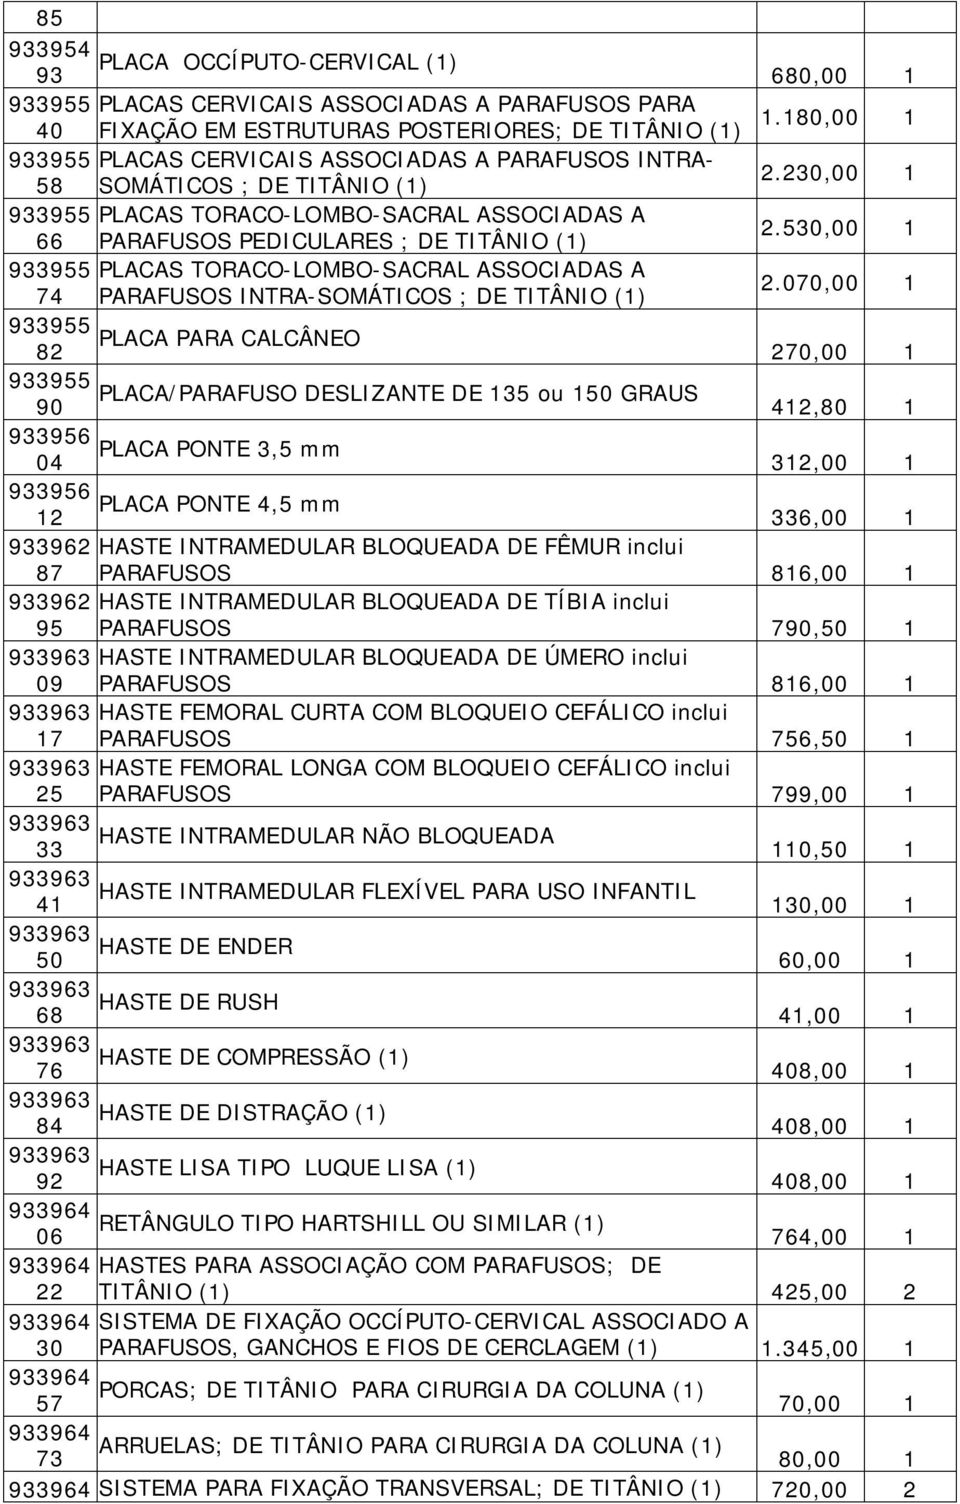 530,00 1 933955 PLACAS TORACO-LOMBO-SACRAL ASSOCIADAS A 74 PARAFUSOS INTRA-SOMÁTICOS ; DE TITÂNIO (1) 2.